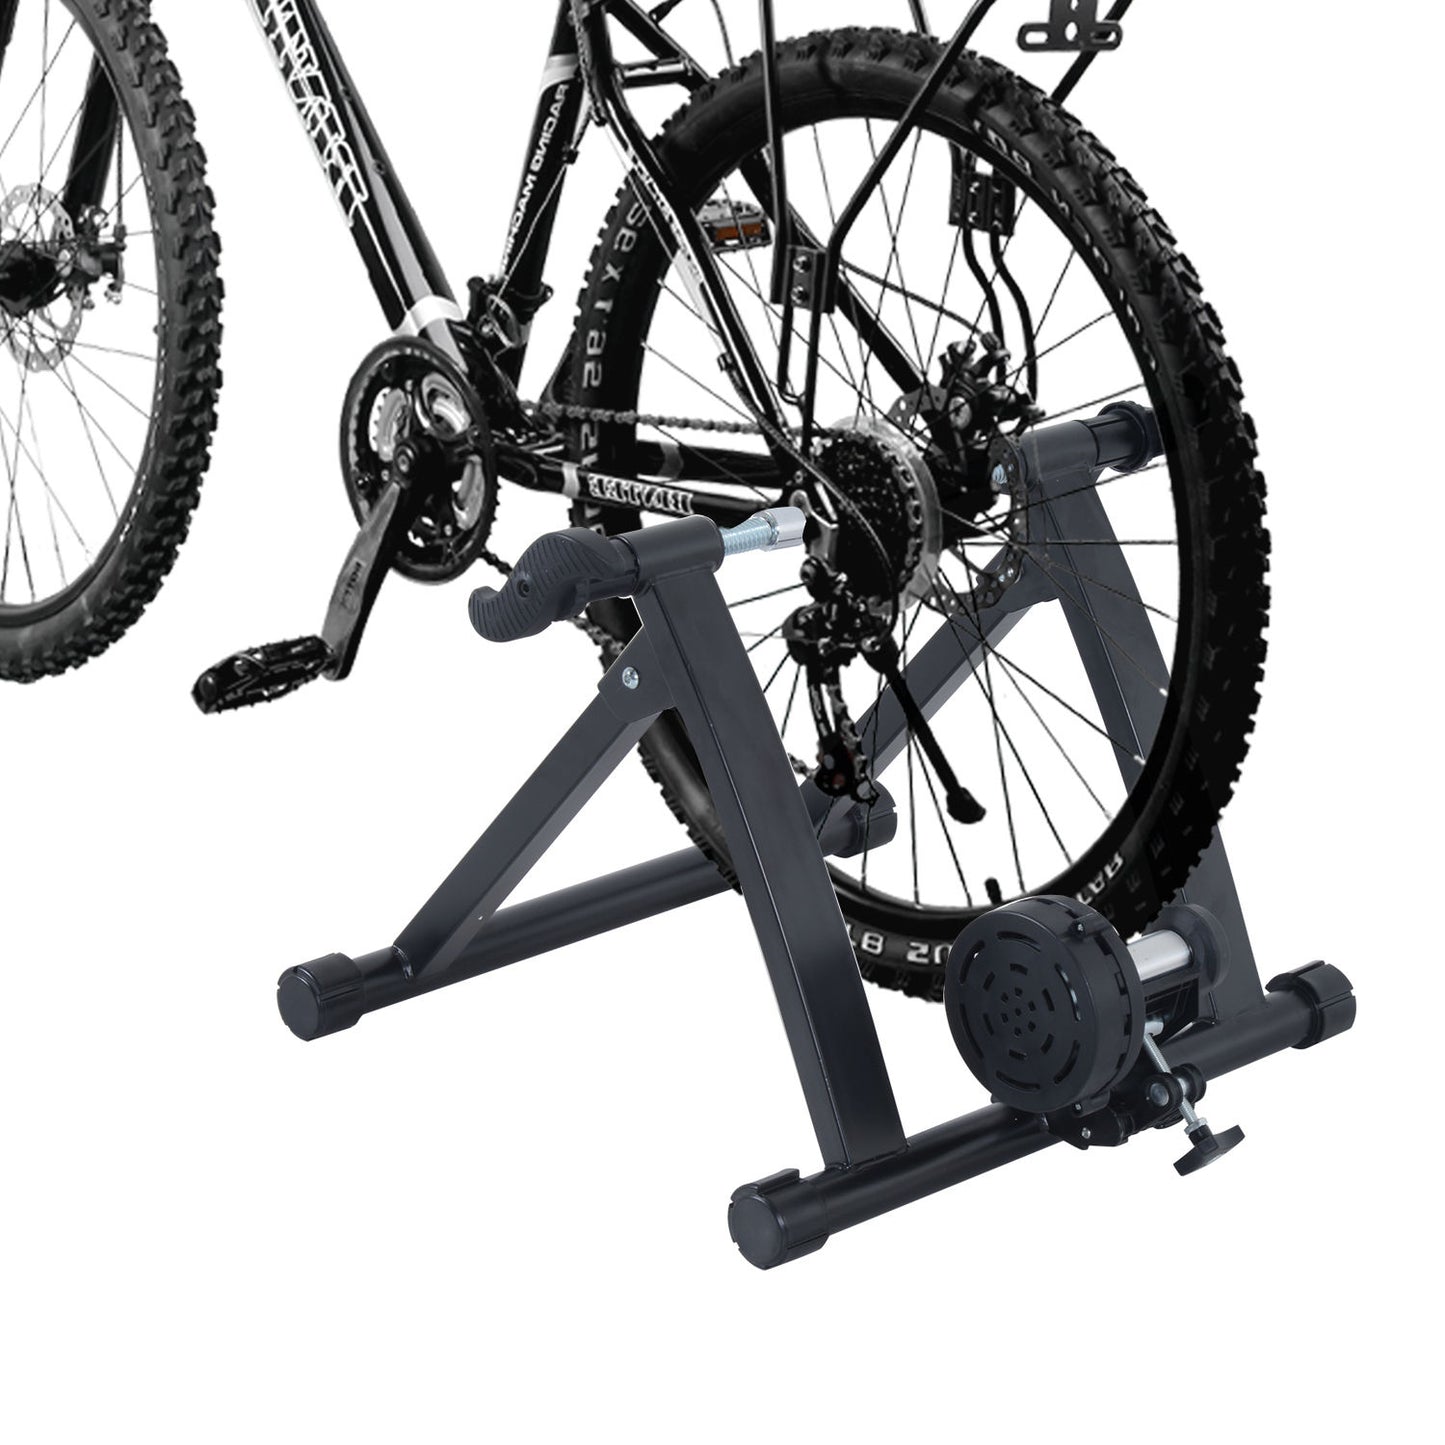 HOMCOM Foldable Indoor Bike Turbo Trainer-Black